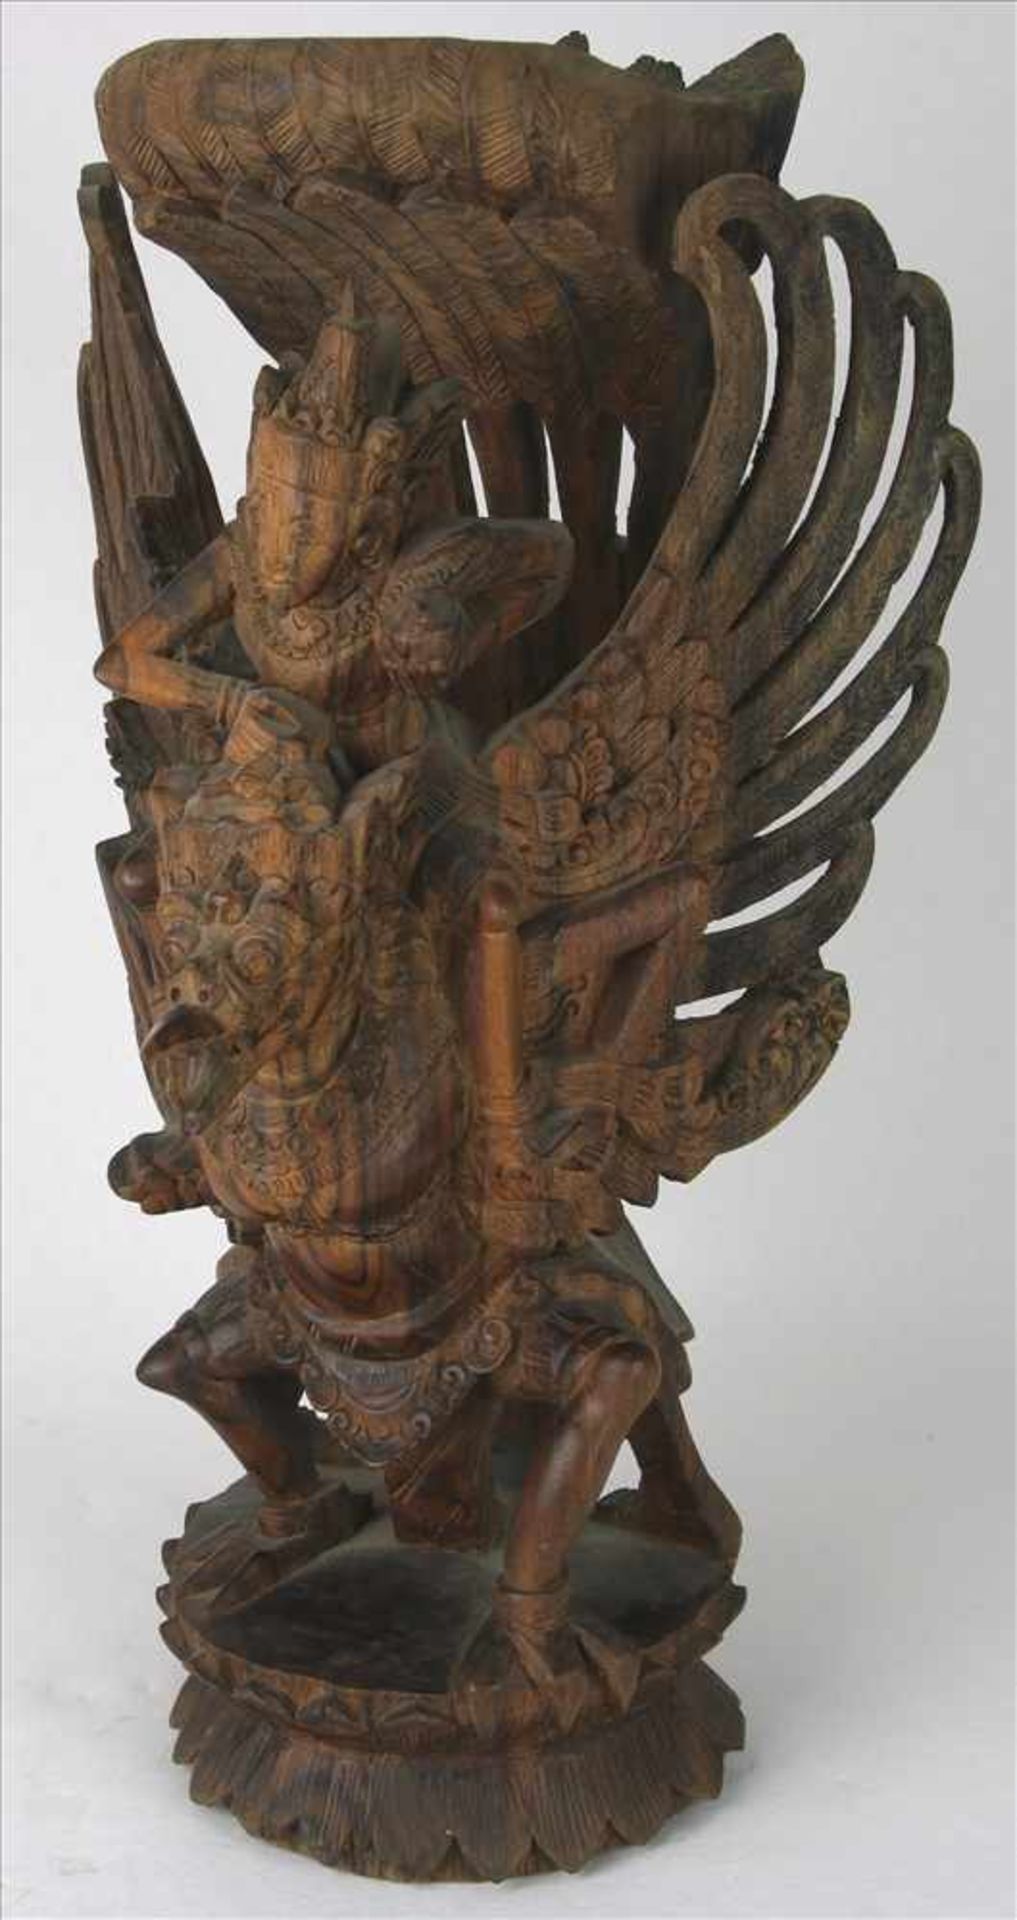 GarudaWohl Bali 20. Jh. Holz geschnitzt. Größe ca. 16 x 17 cm, Höhe ca. 30 cm. Teils etwas